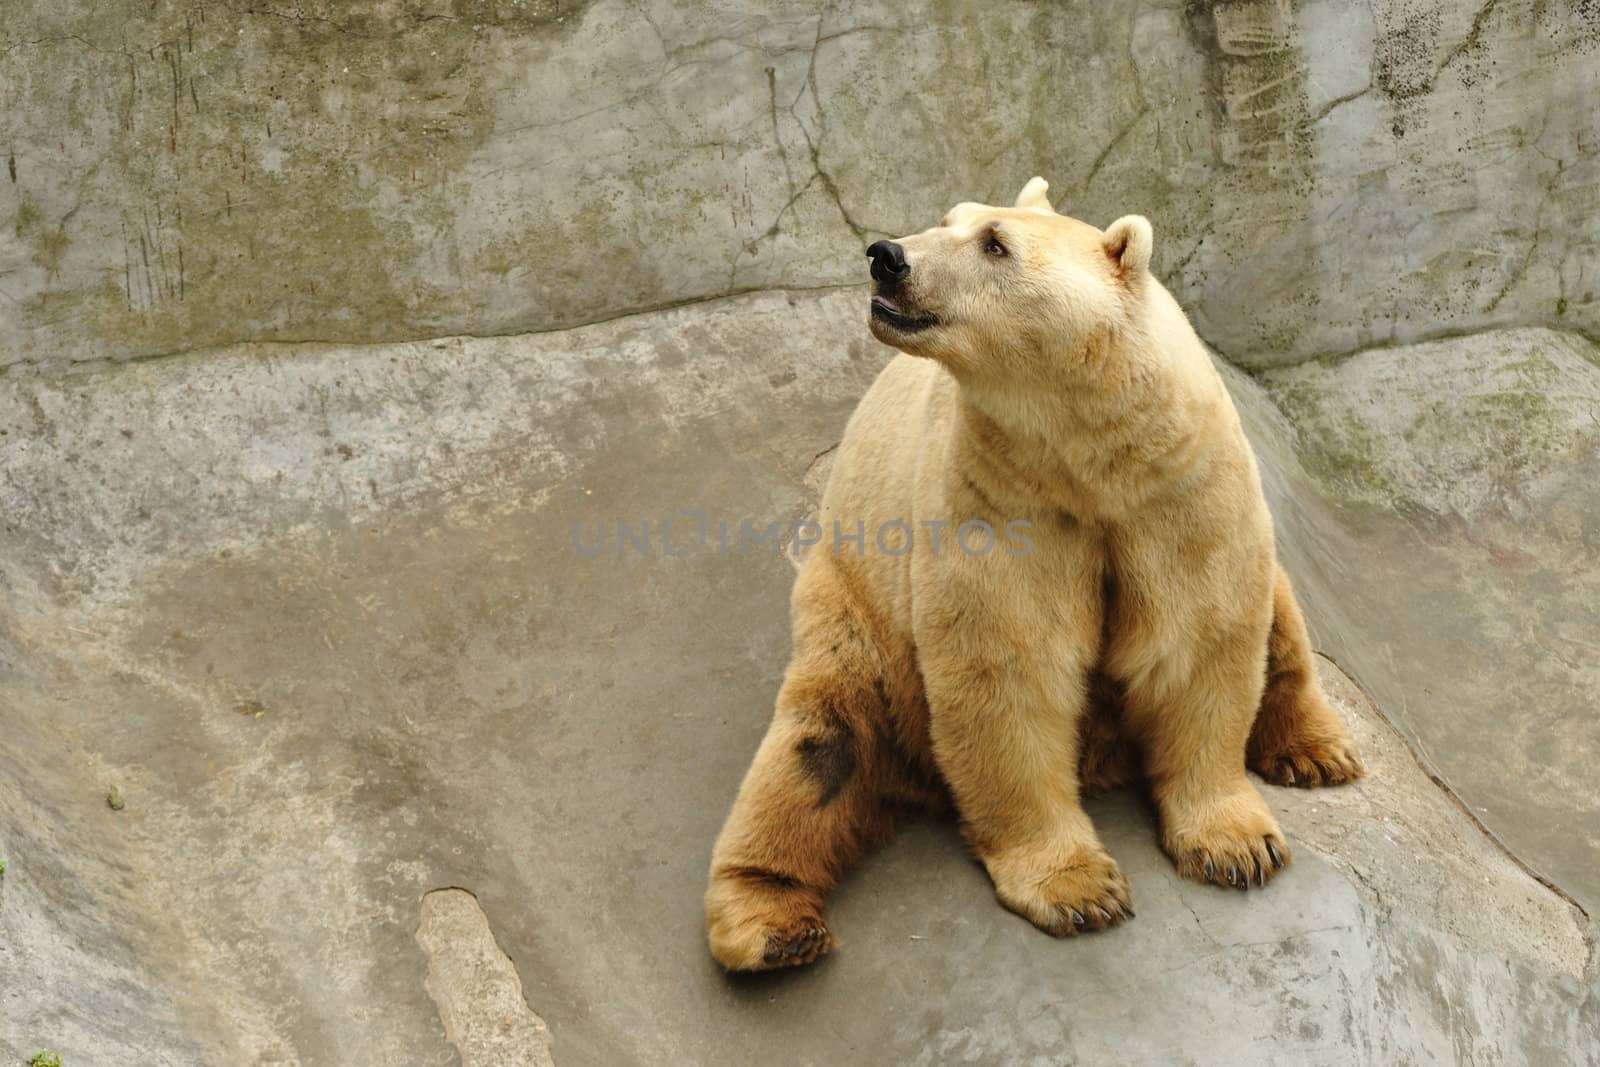 Polar bear by zagart36